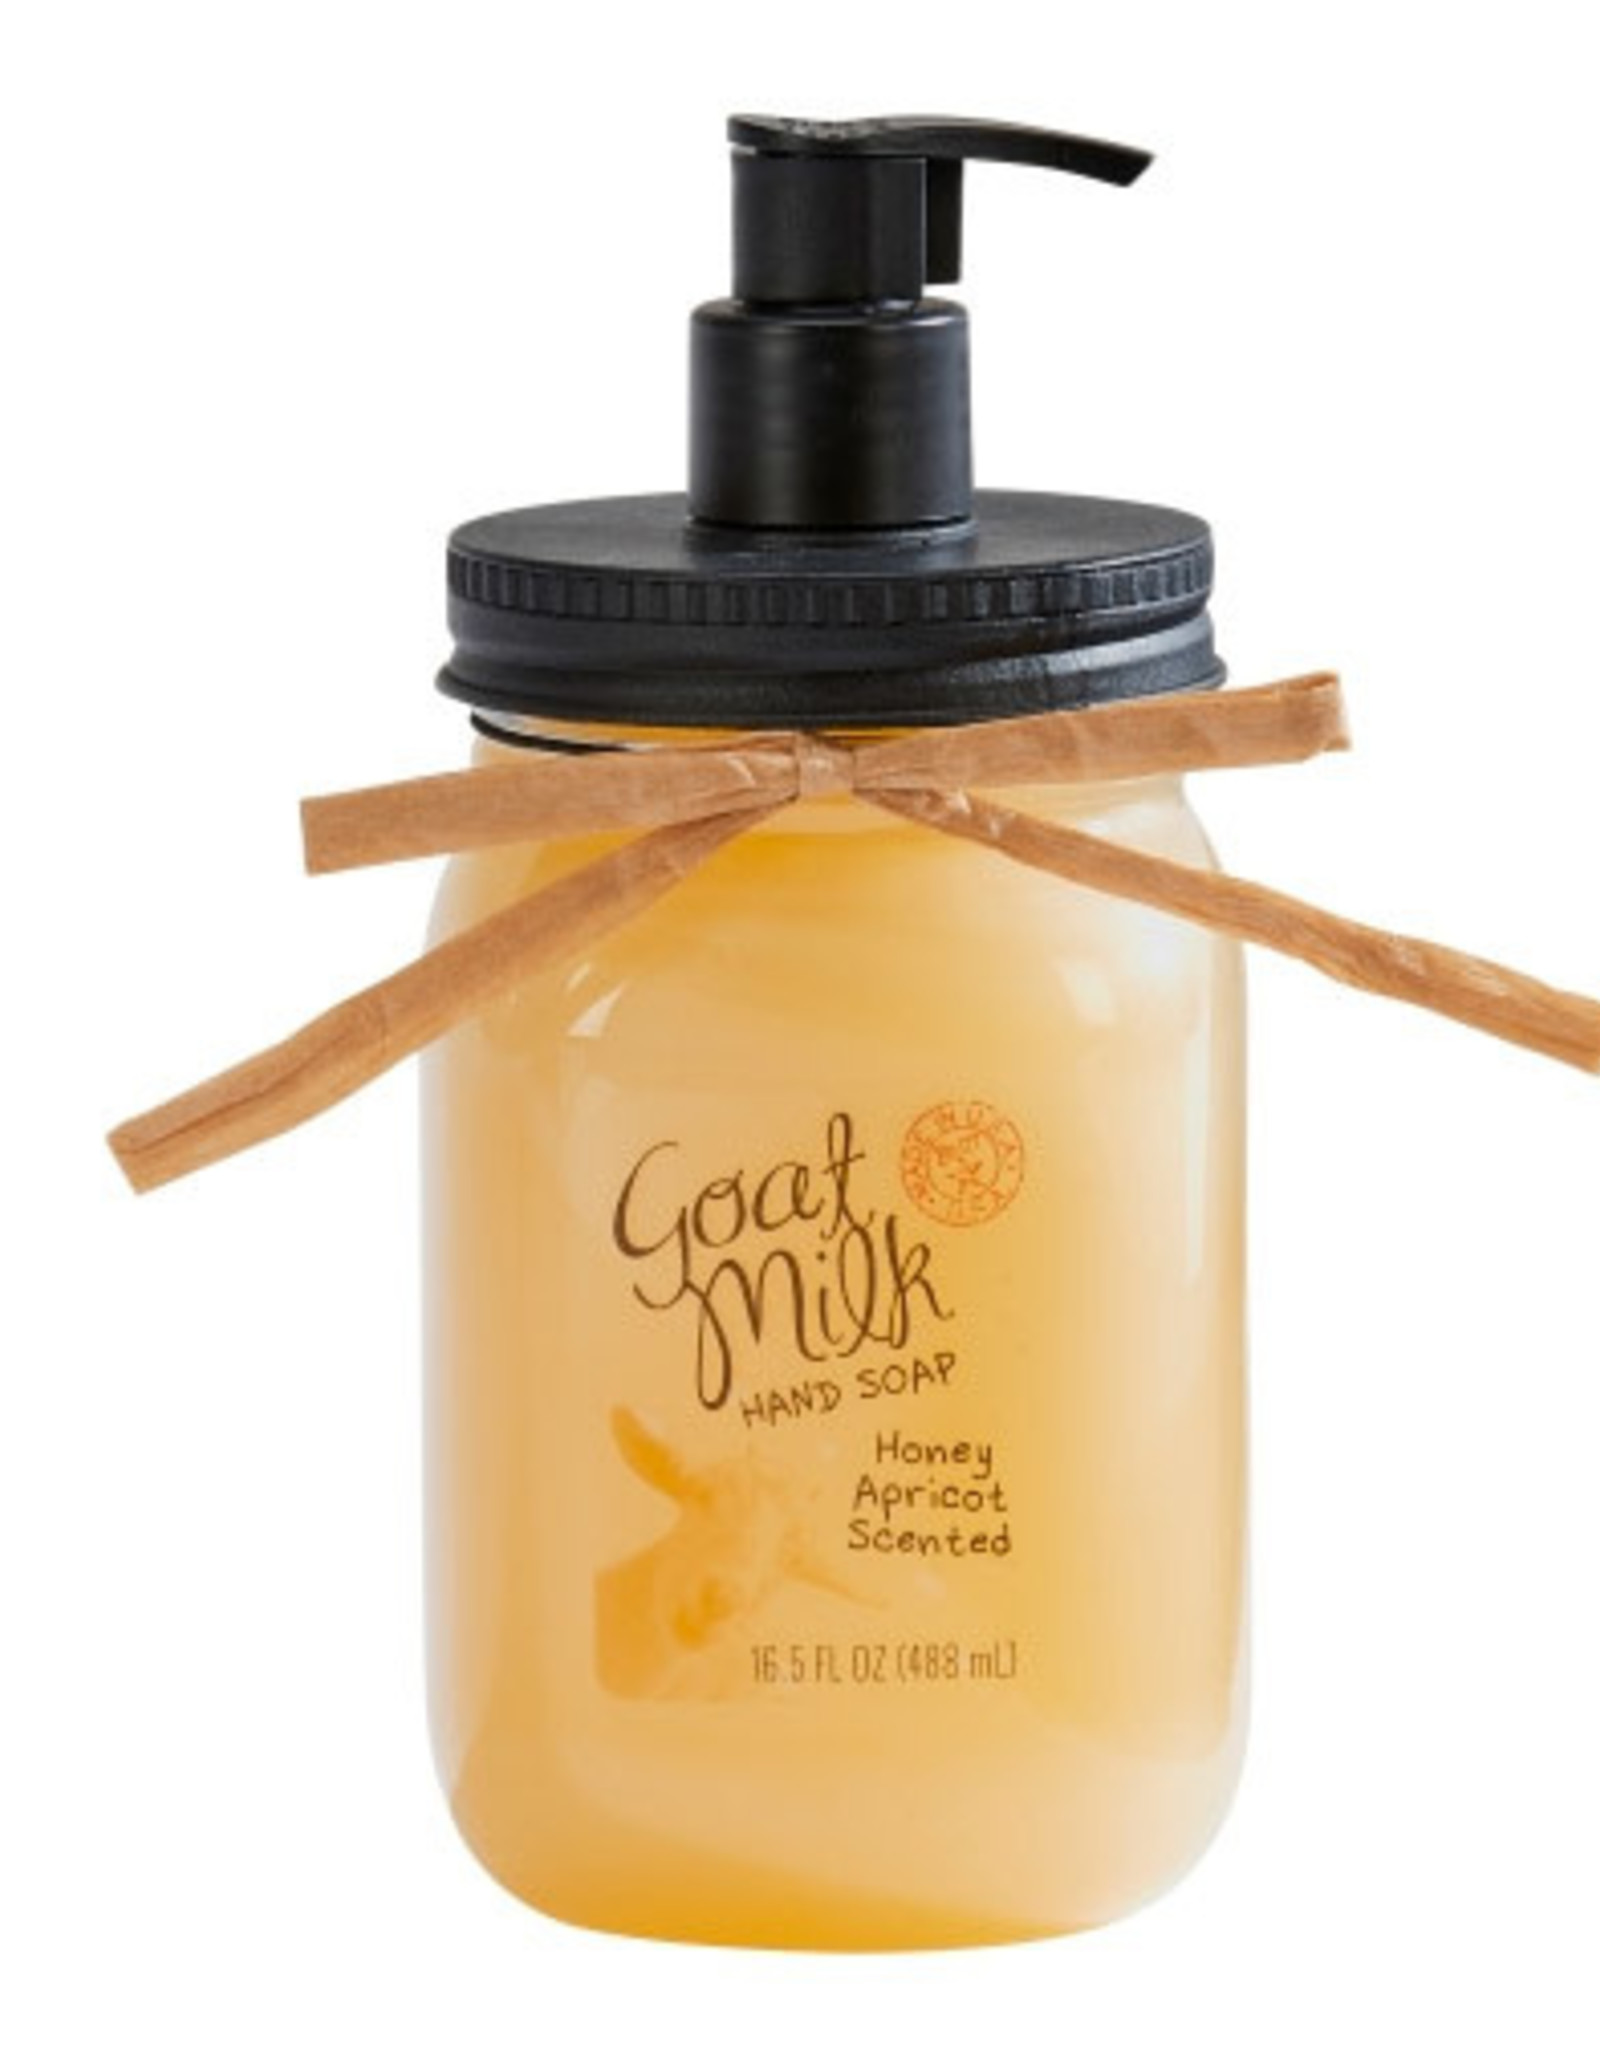 San Francisco Soap Company Goat Milk Hand Soap - Honey Apricot